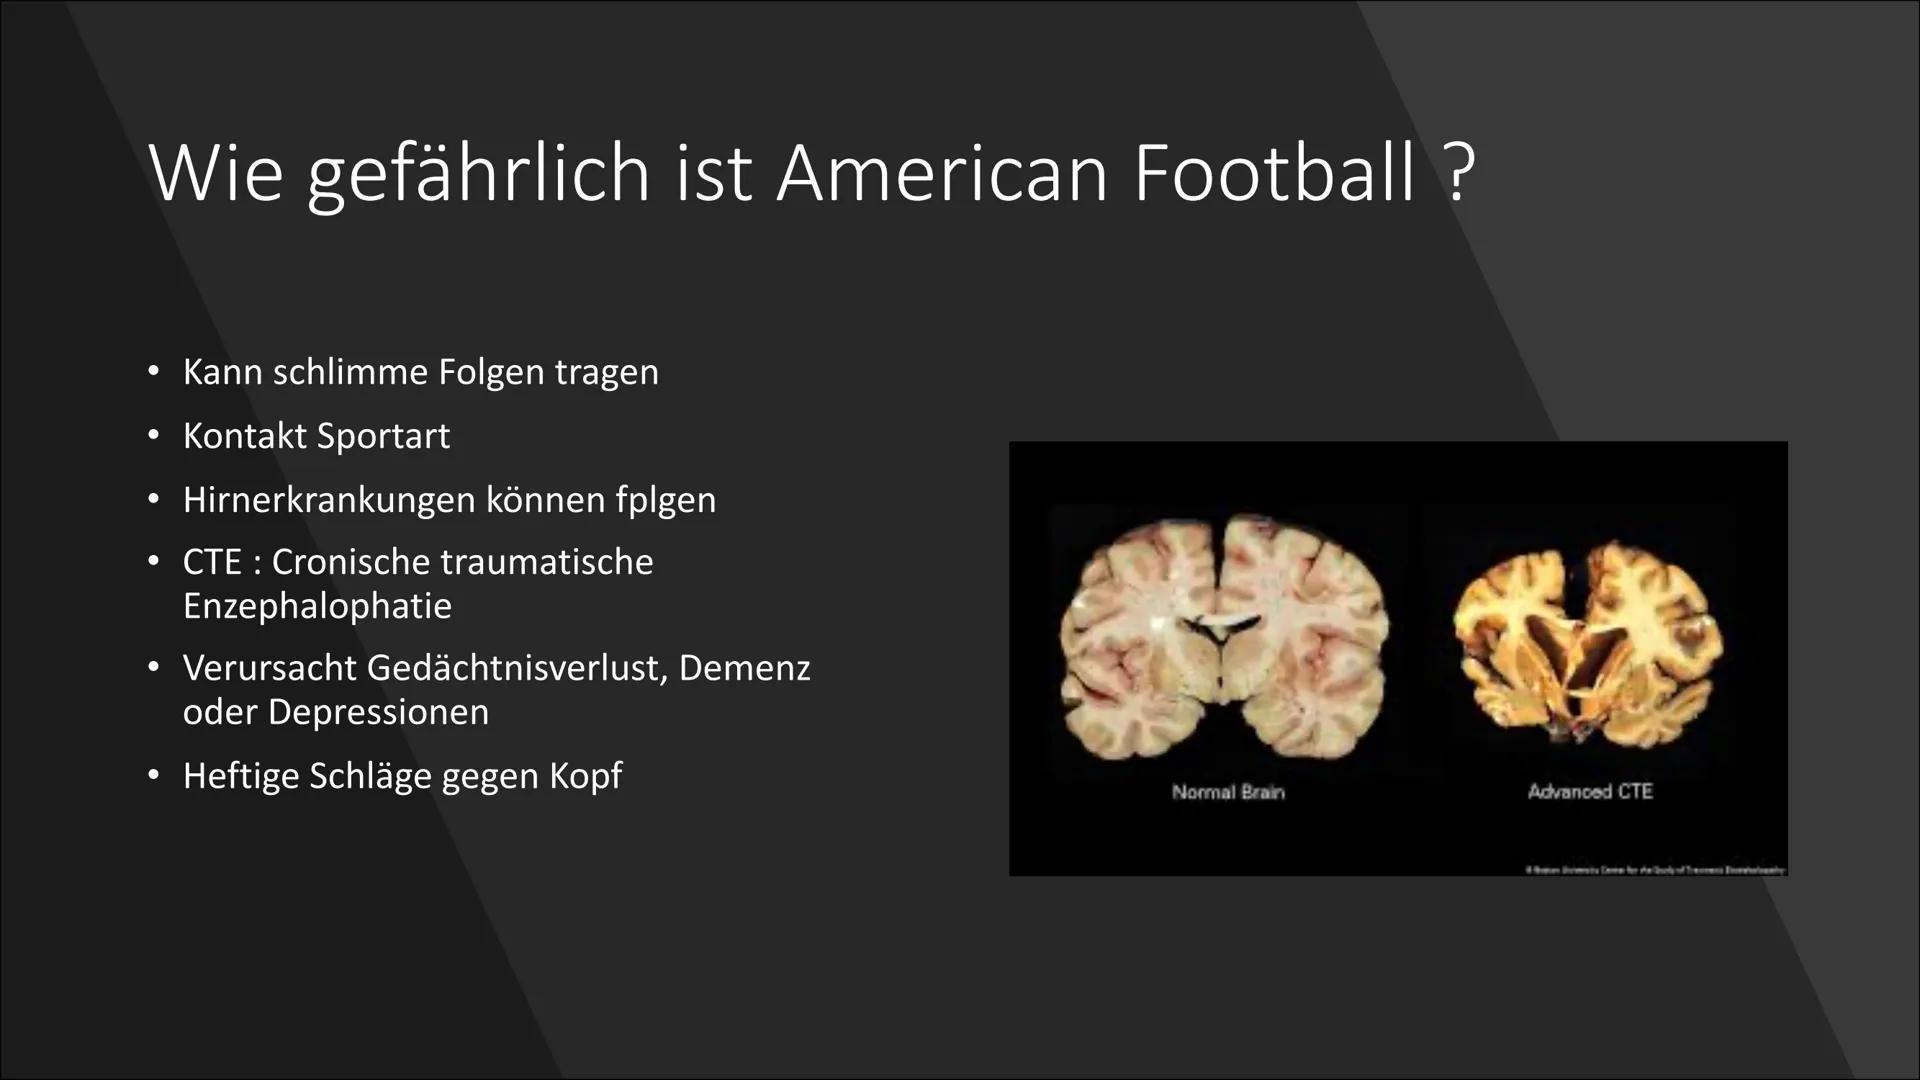 
<h2 id="wasistfootballgeschichte">Was ist Football? + Geschichte</h2>
<p>American Football hat seinen Ursprung in den Vereinigten Staaten v